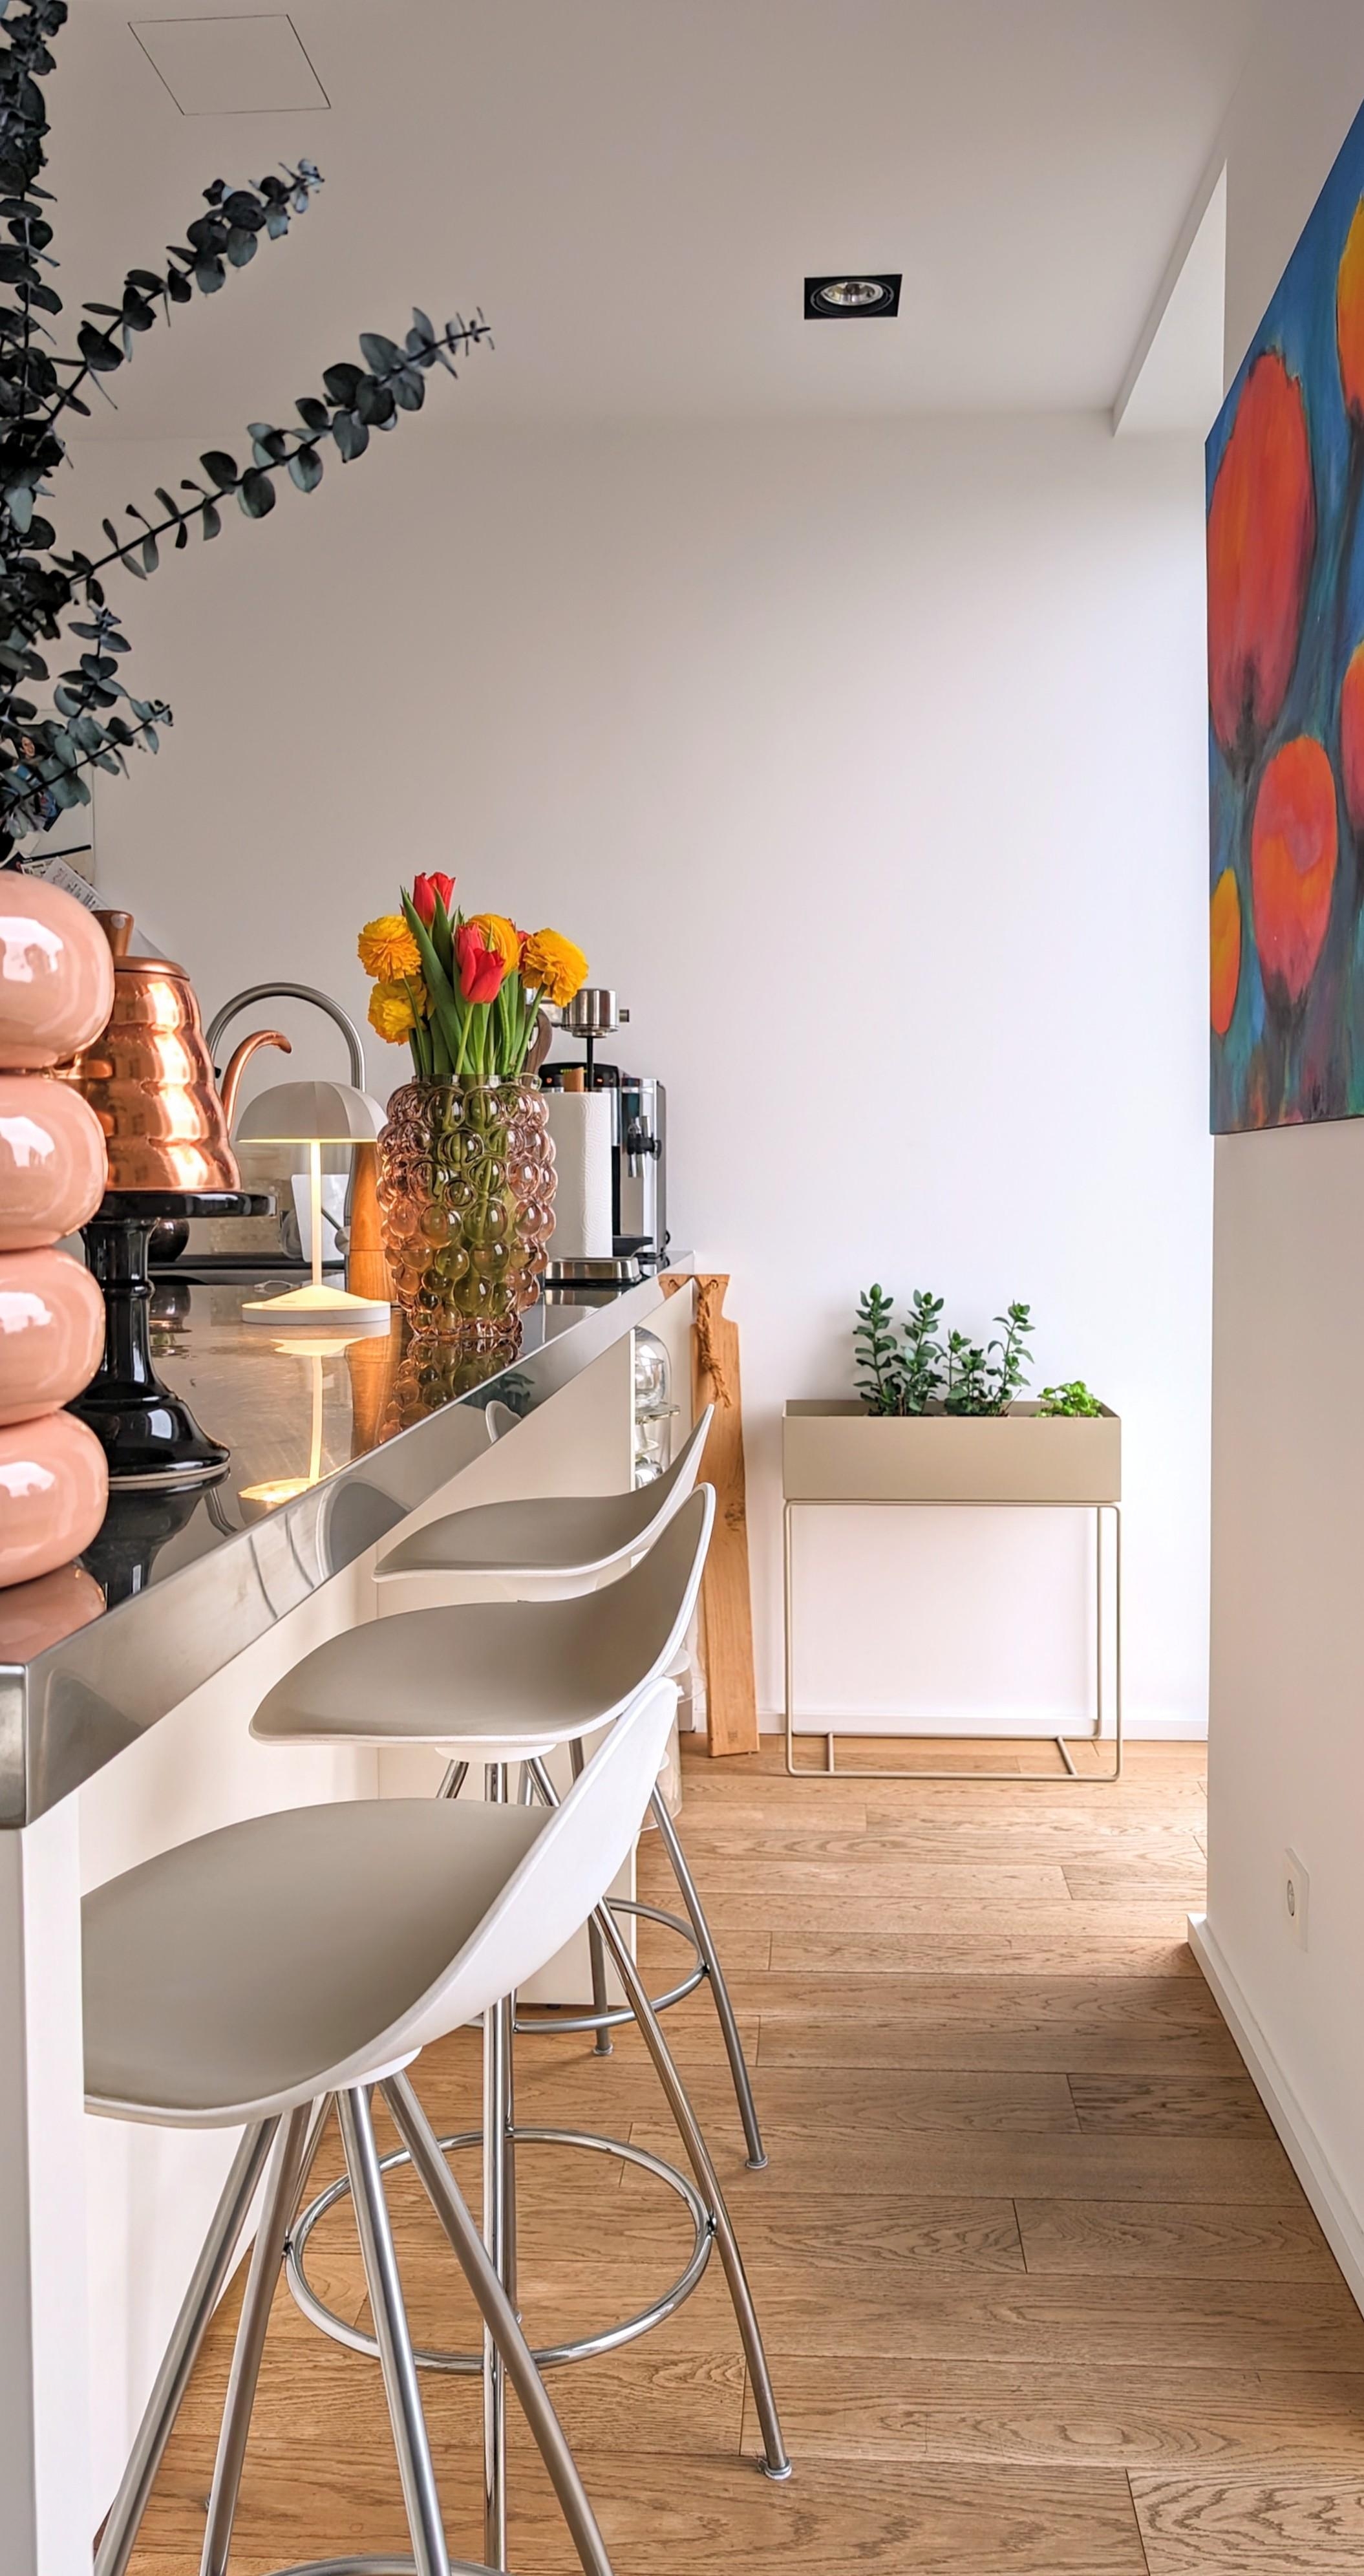 #Küche #Frühlingsblumen #Tulpen #Ranunkel #interiordesign #interior designer